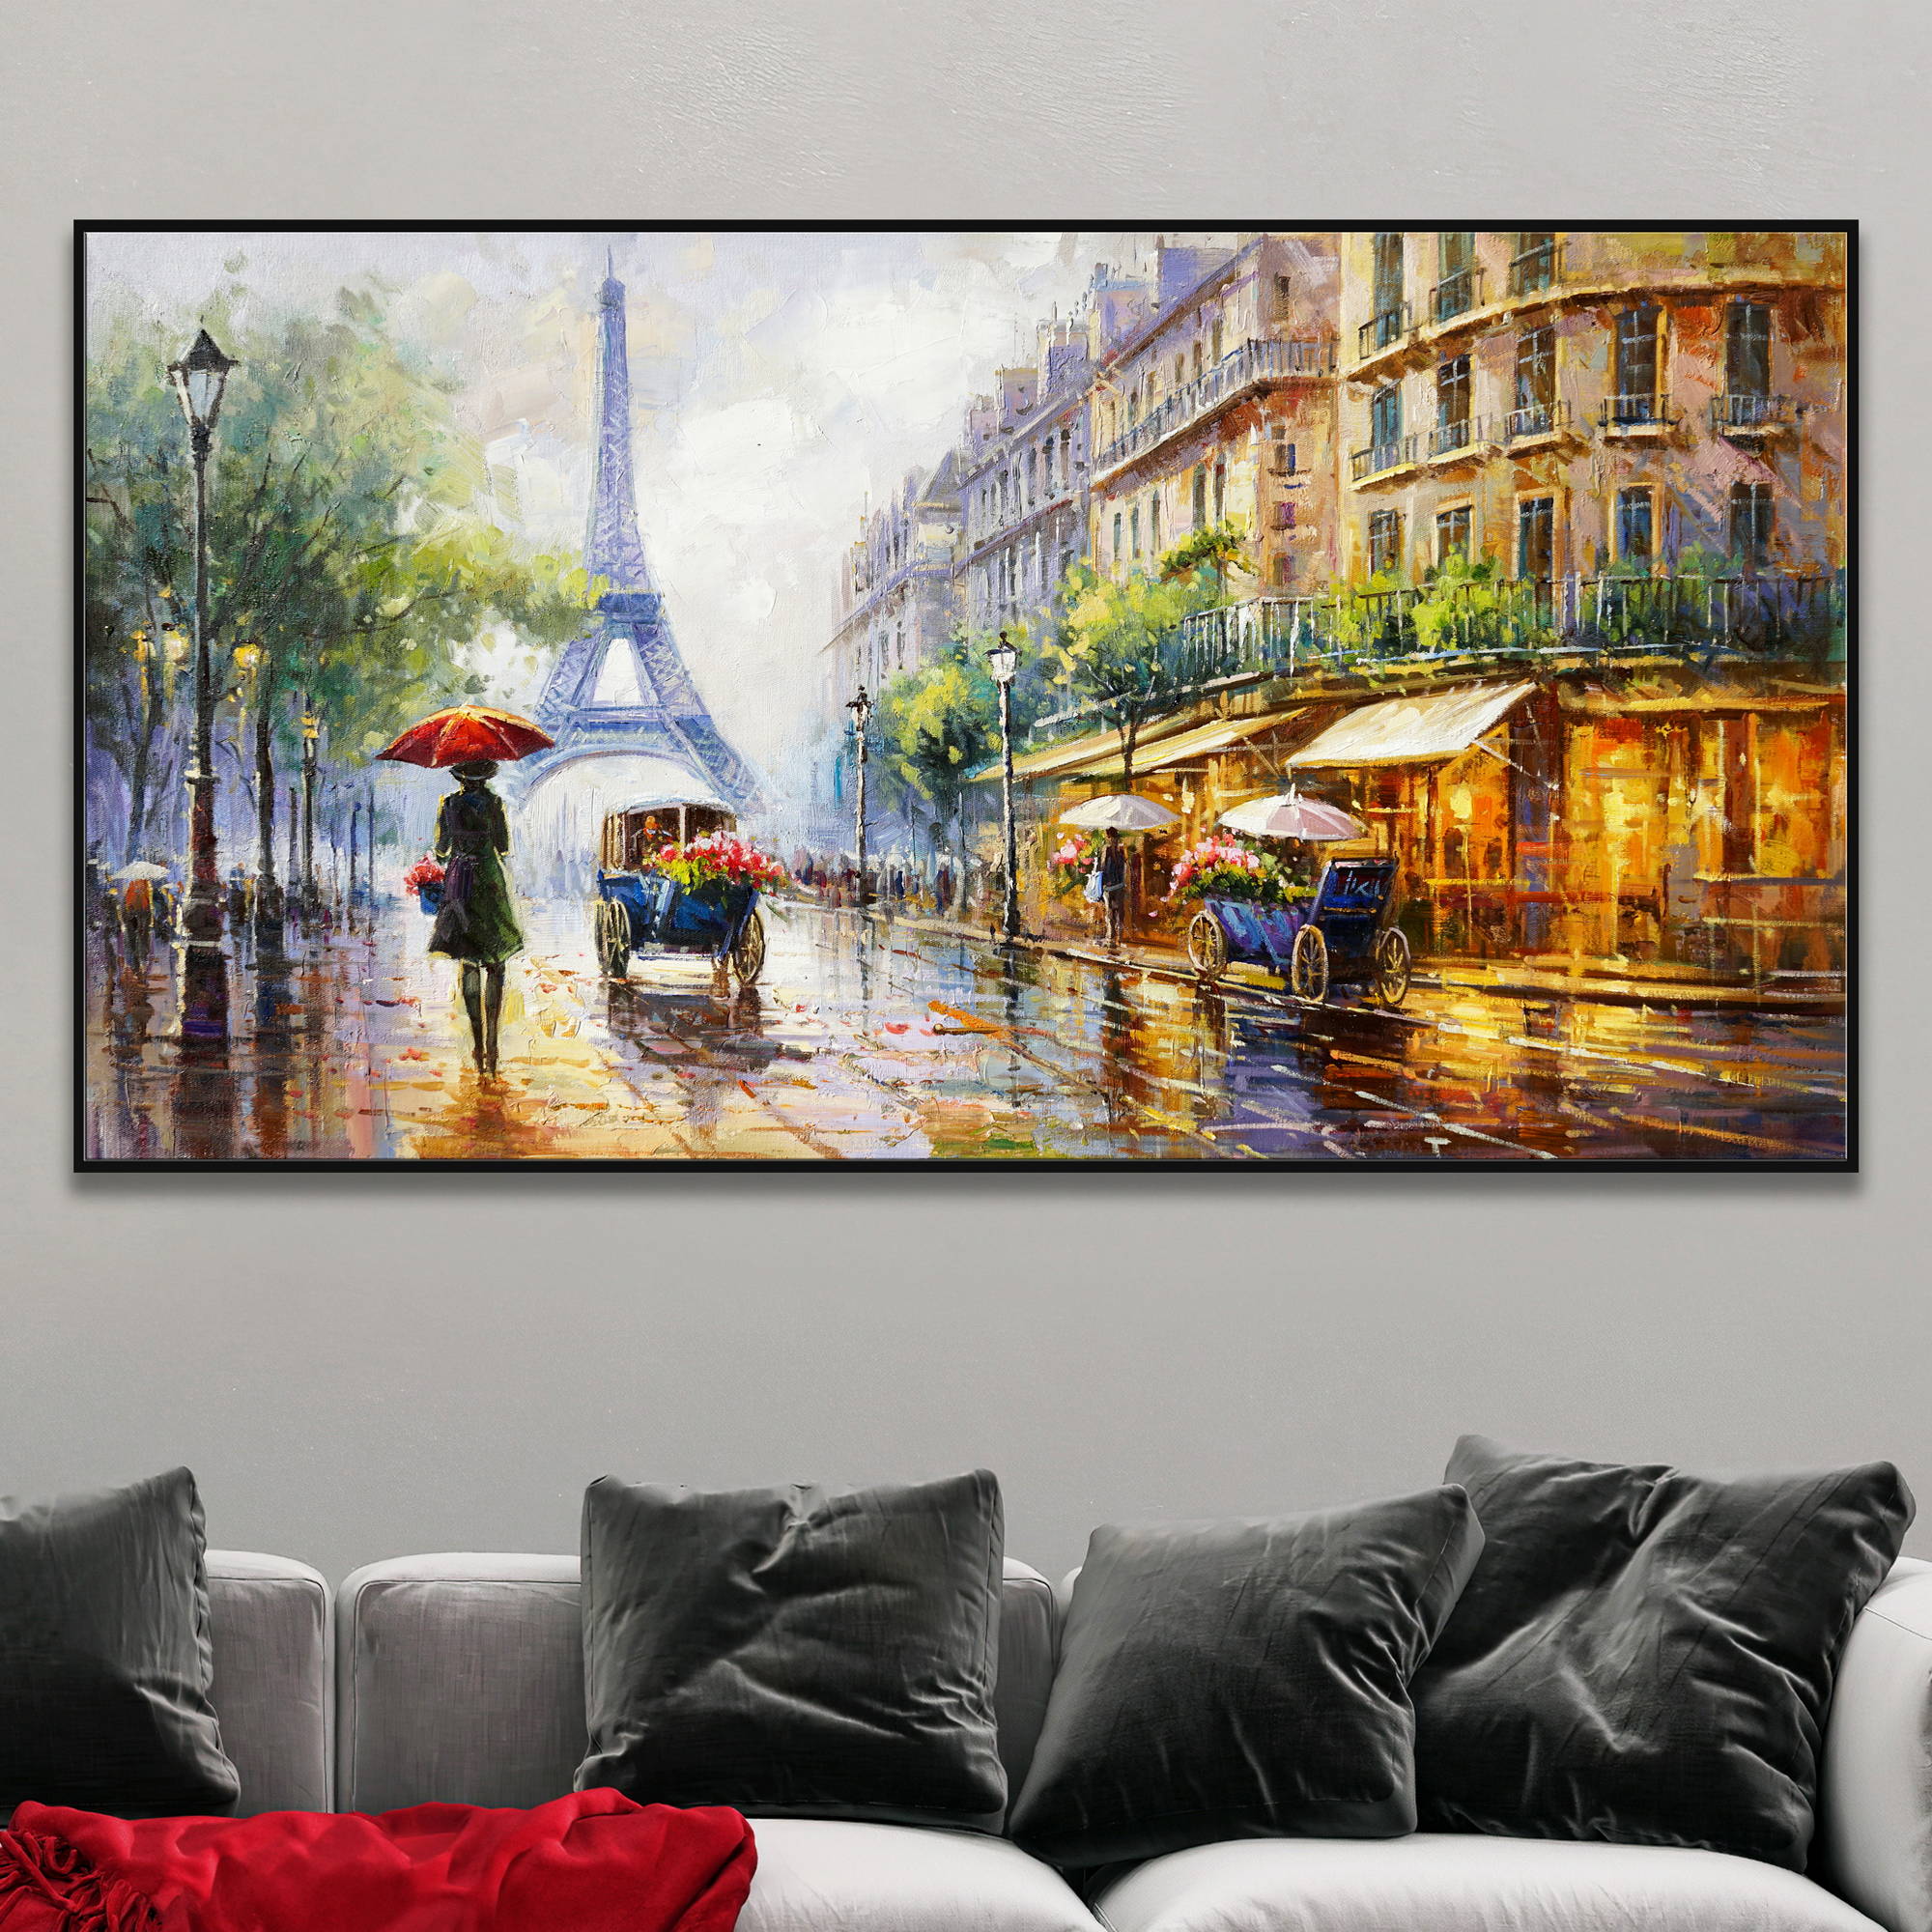 Dipinto di una pittoresca strada di Parigi in un giorno piovoso con la Tour Eiffel sullo sfondo.